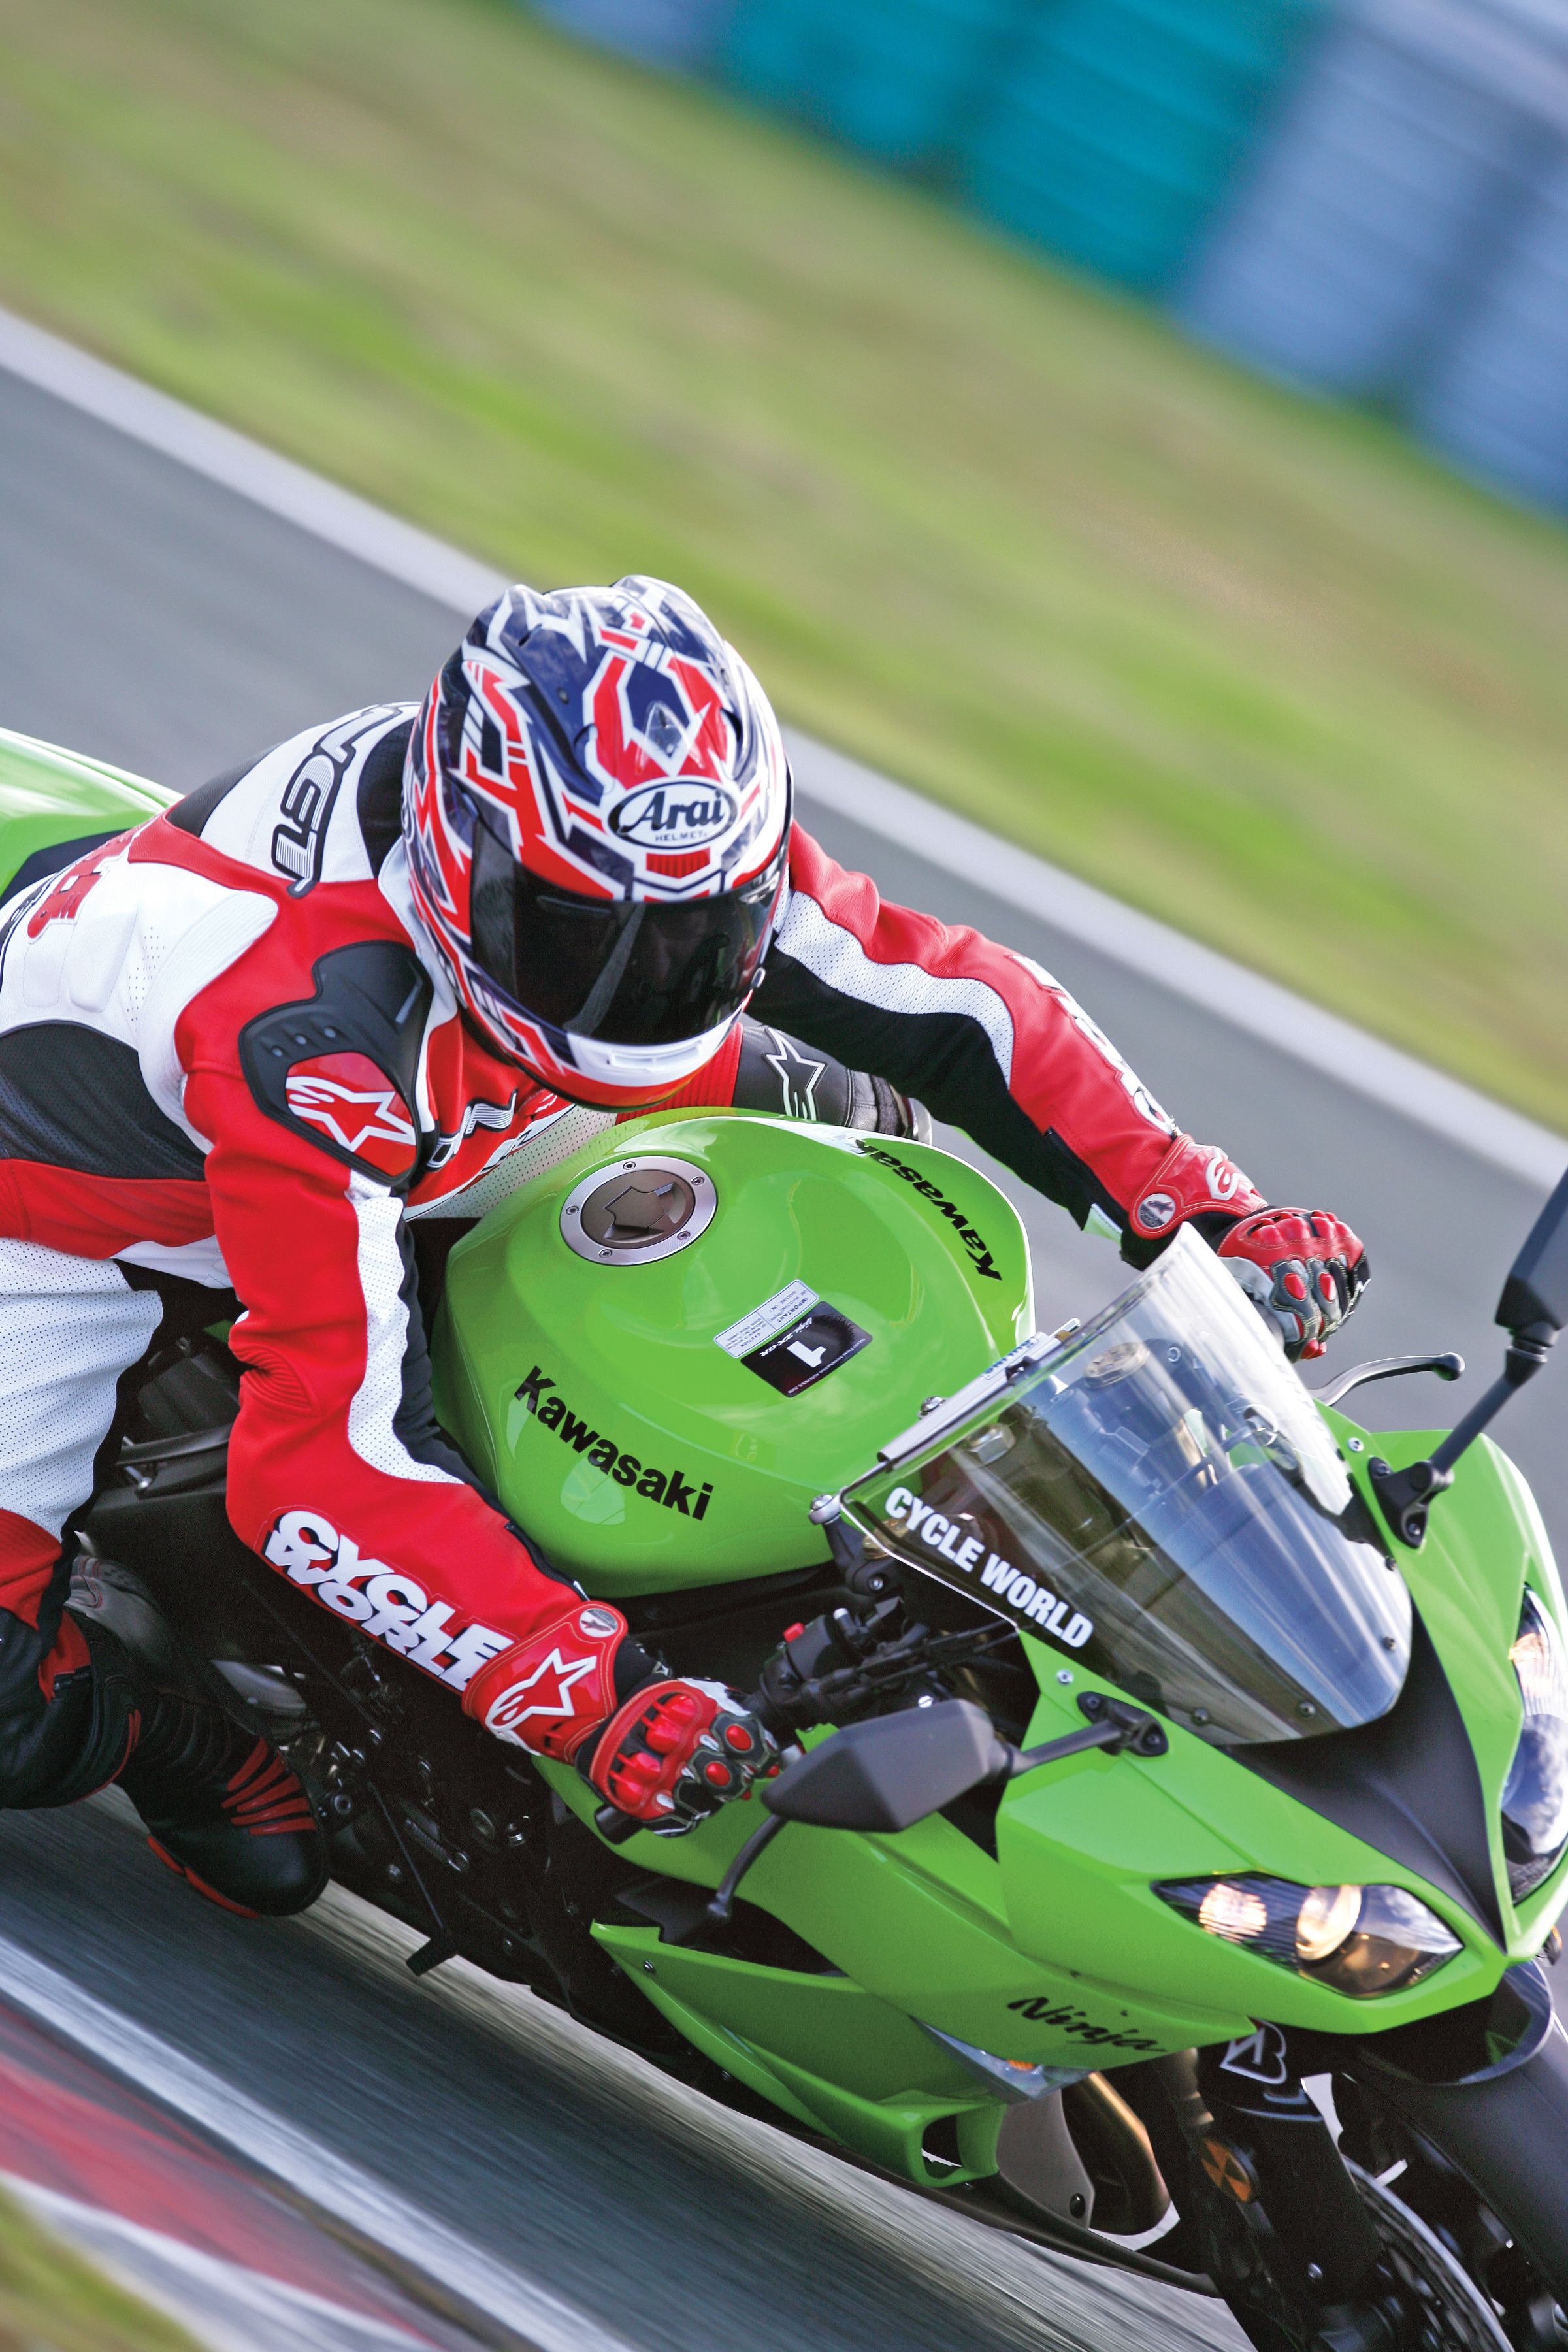 2009 Kawasaki Ninja ZX-6R Motorcycle Review | Cycle World